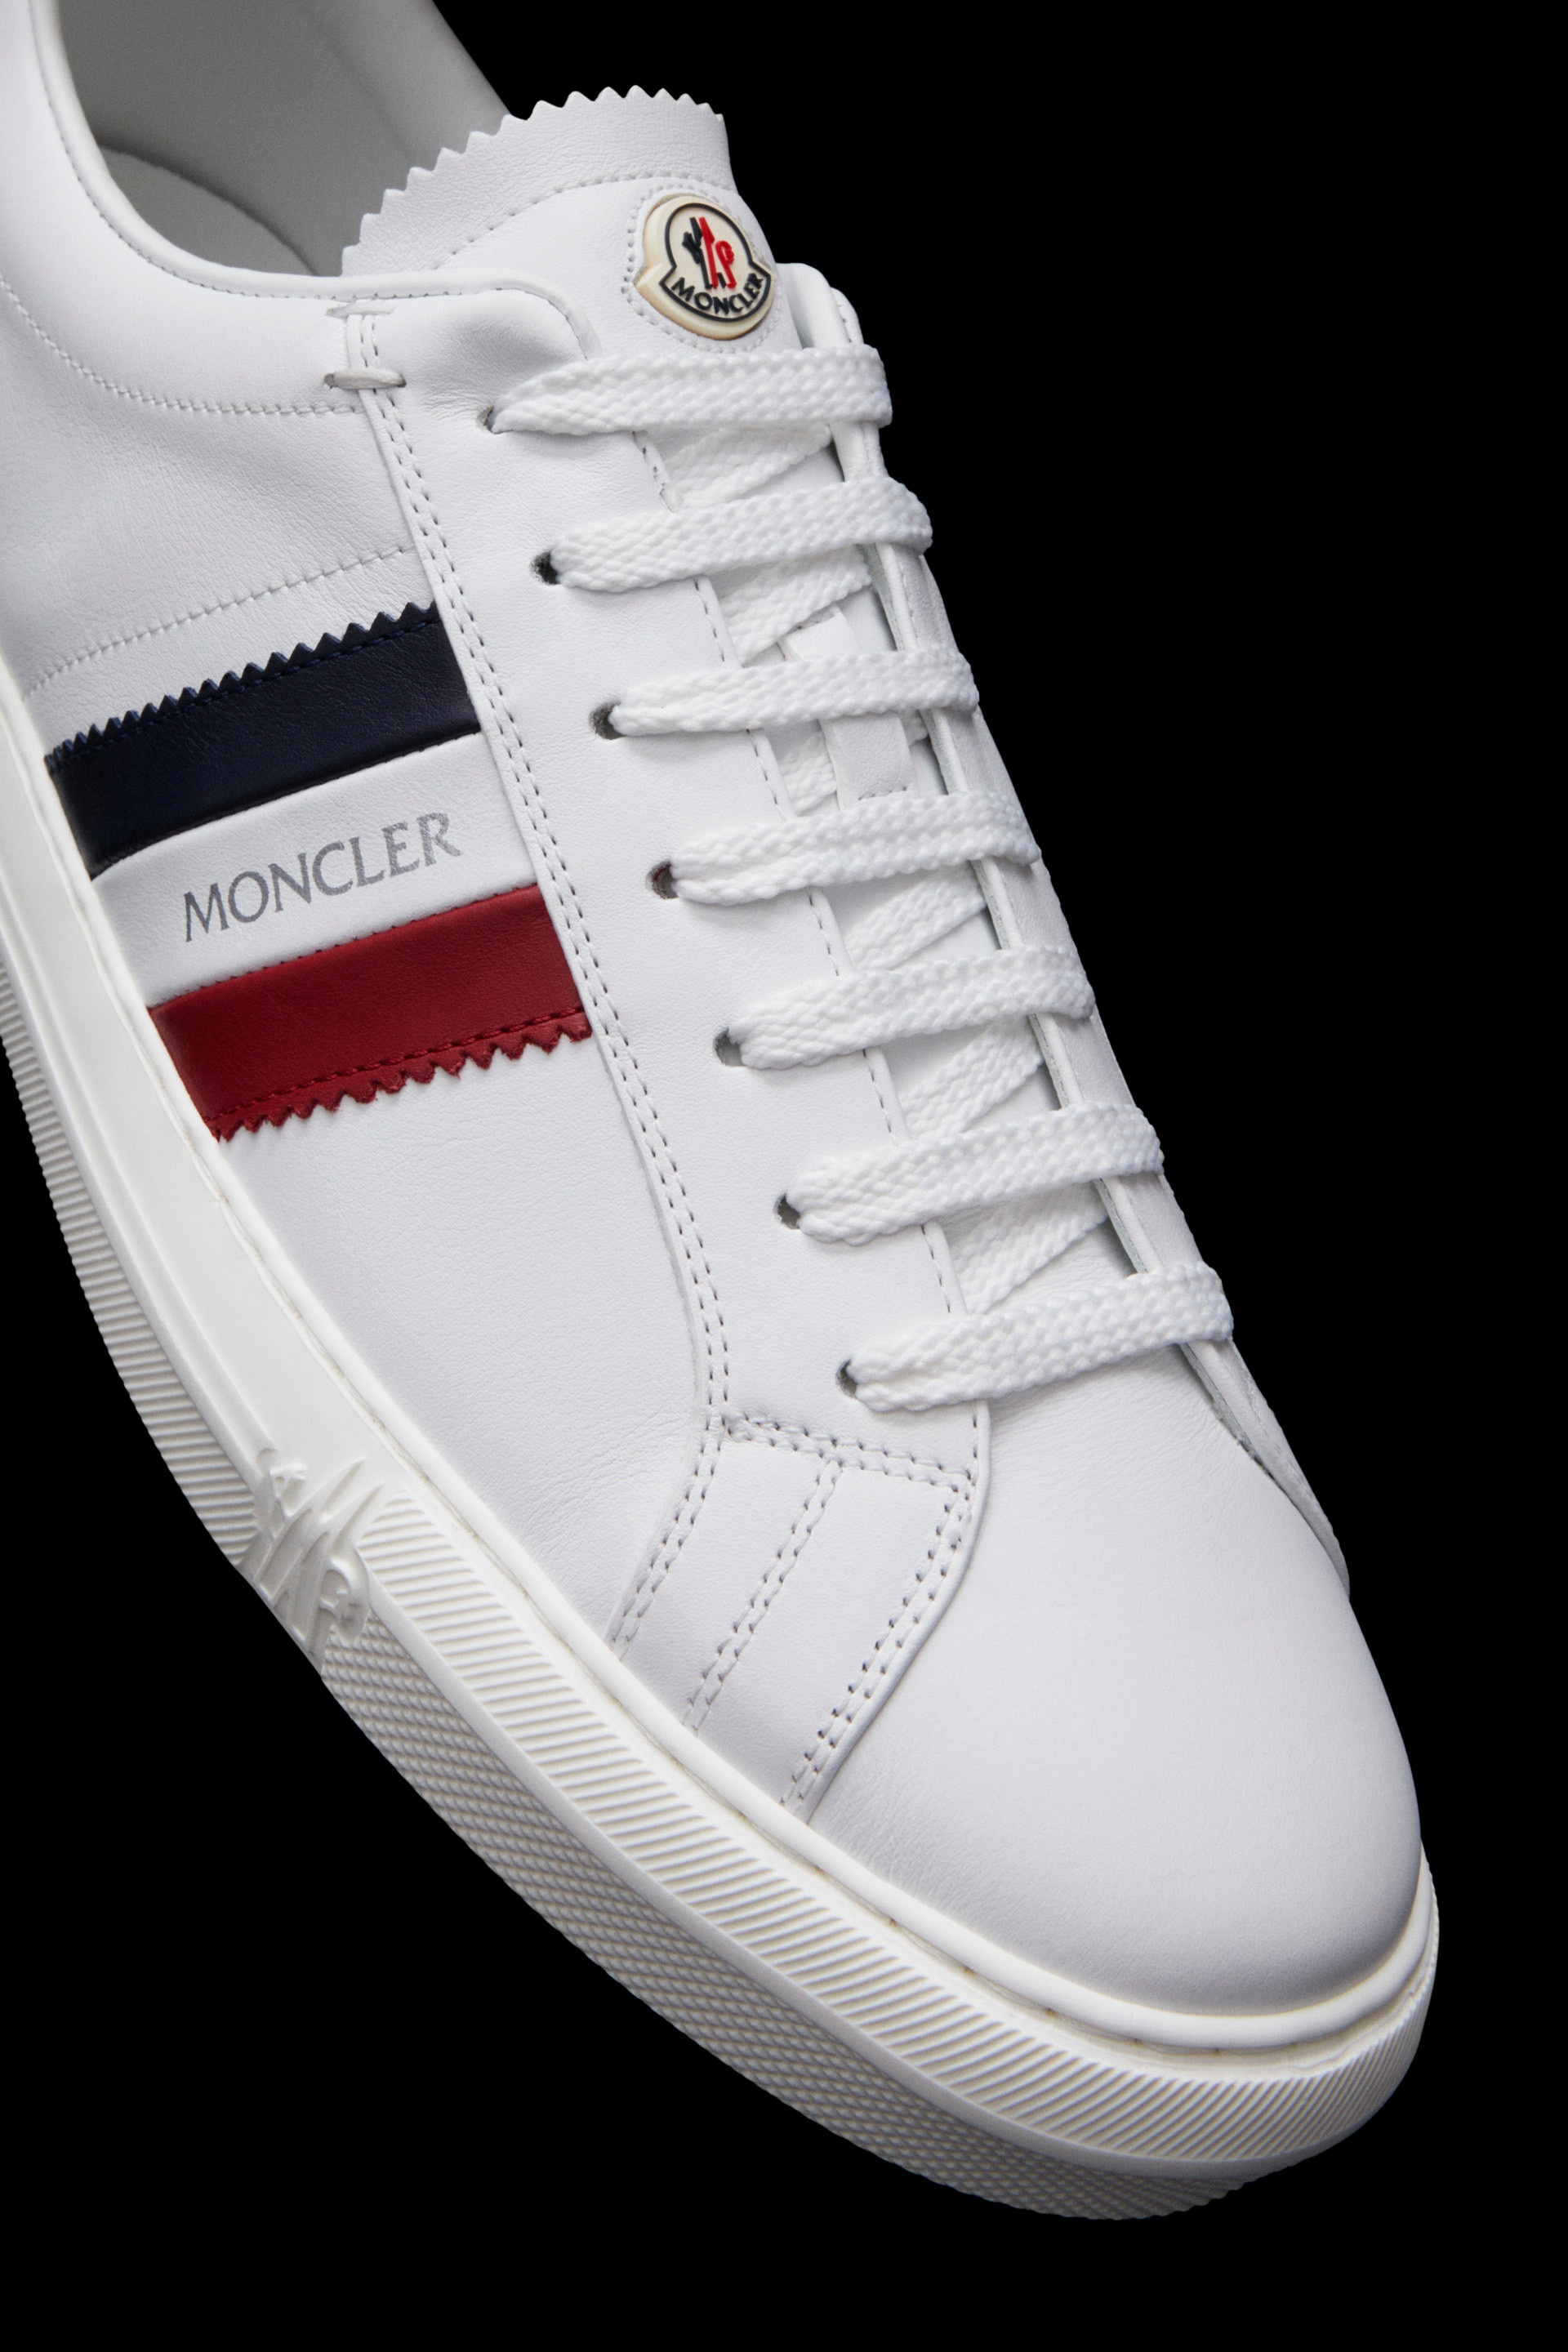 New Monaco Sneakers - 4